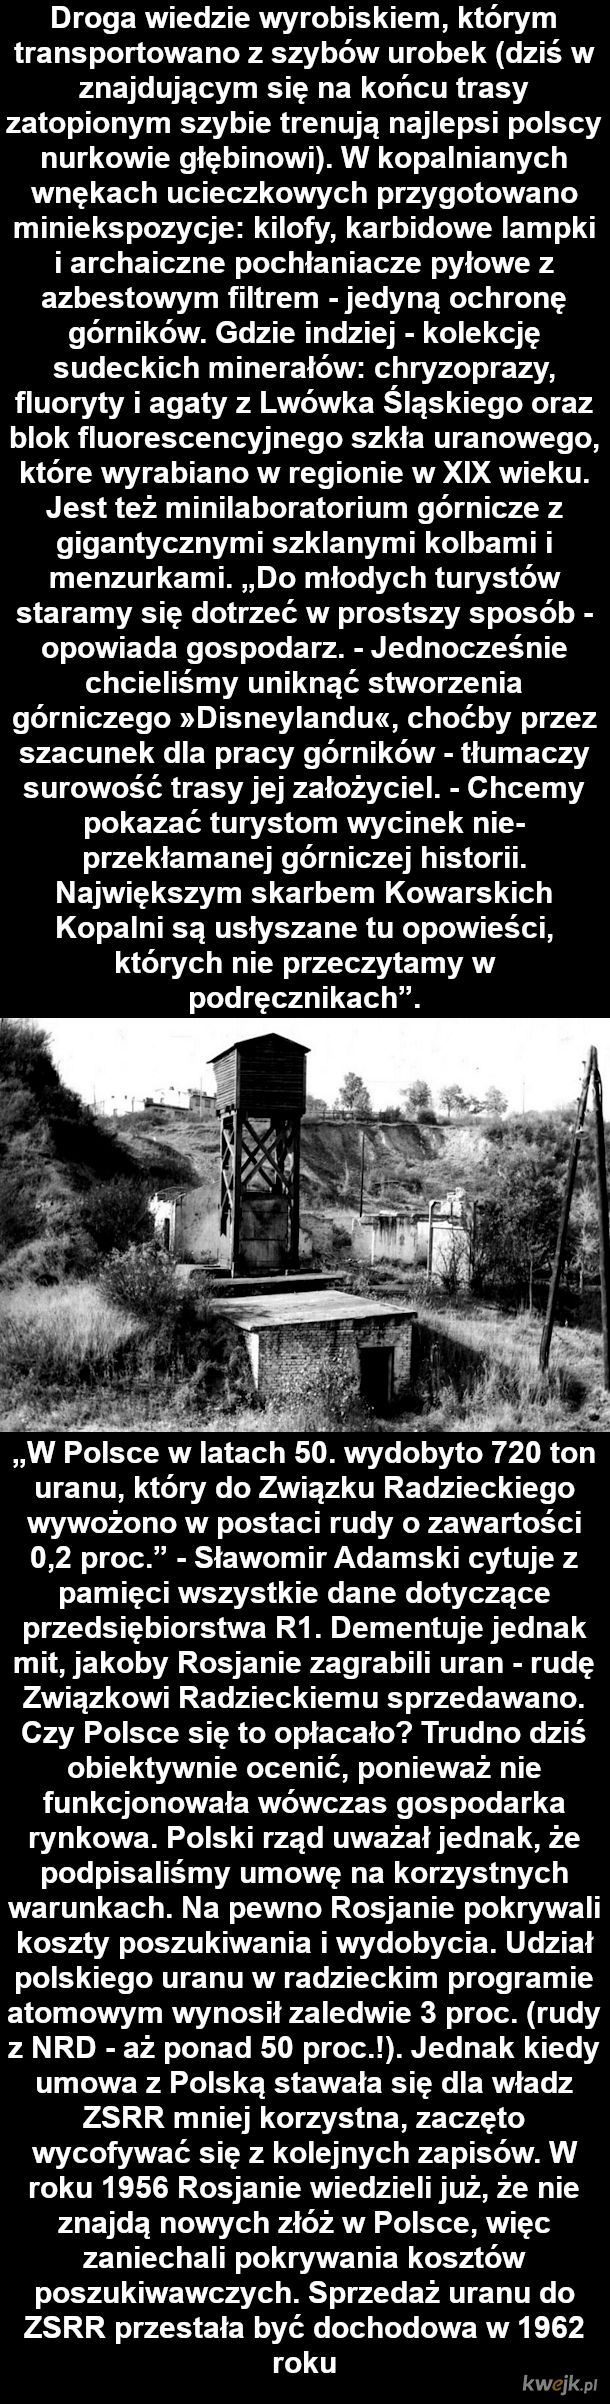 Historia tajnych kopalń uranu w Polsce za porozumieniem Polski i ZSRR, obrazek 4